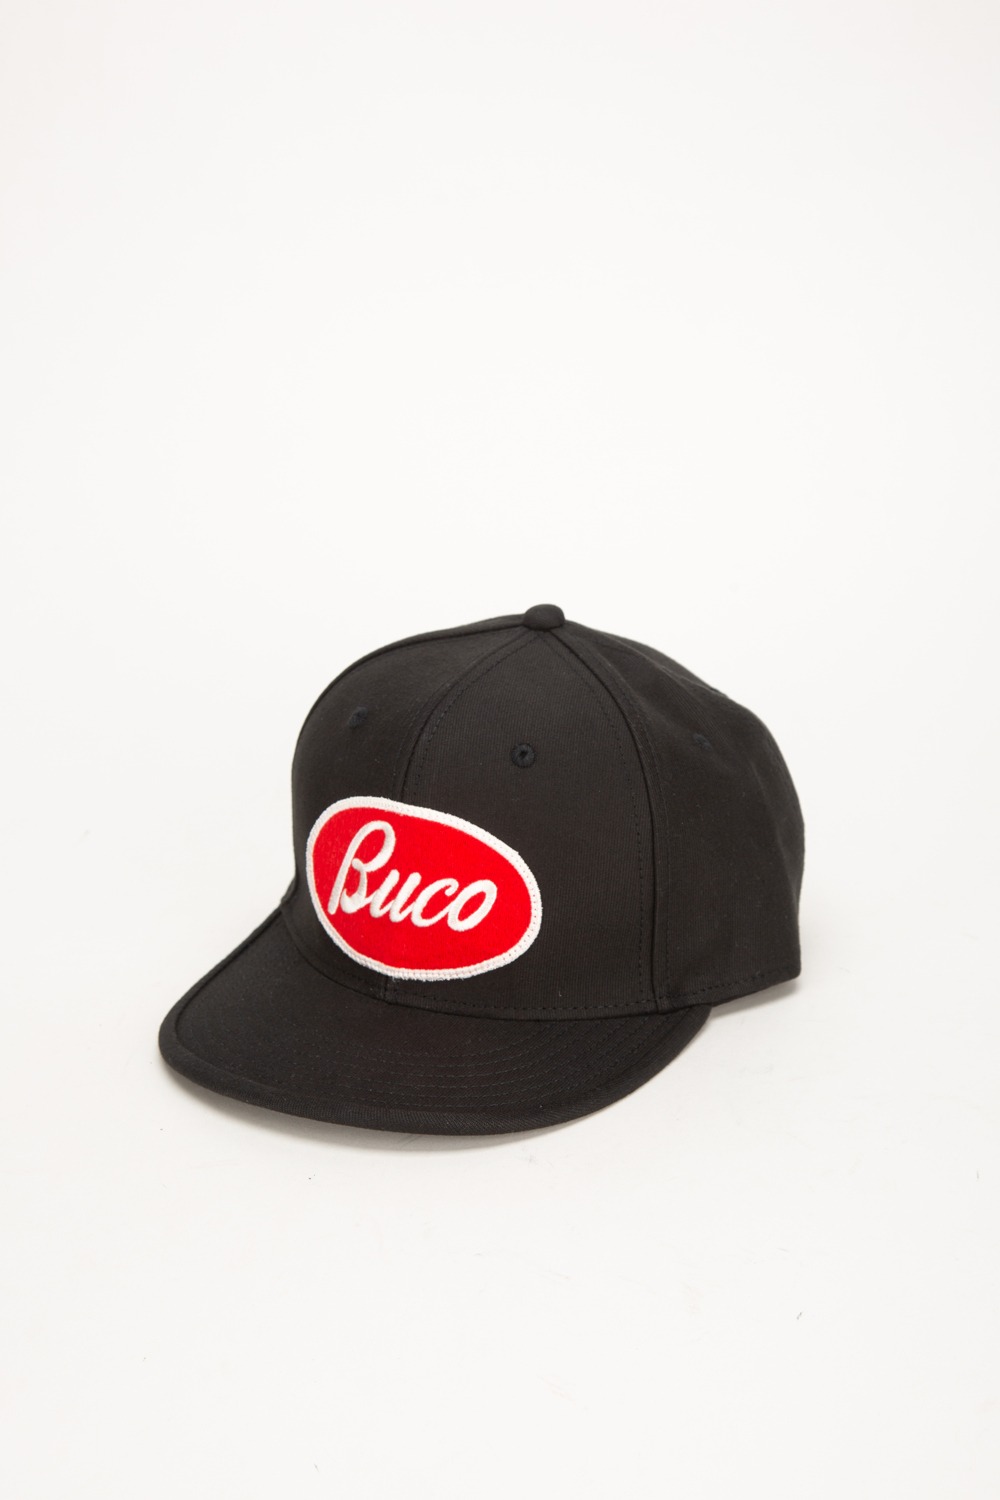 BUCO STRAP-BACK CAP BLACK